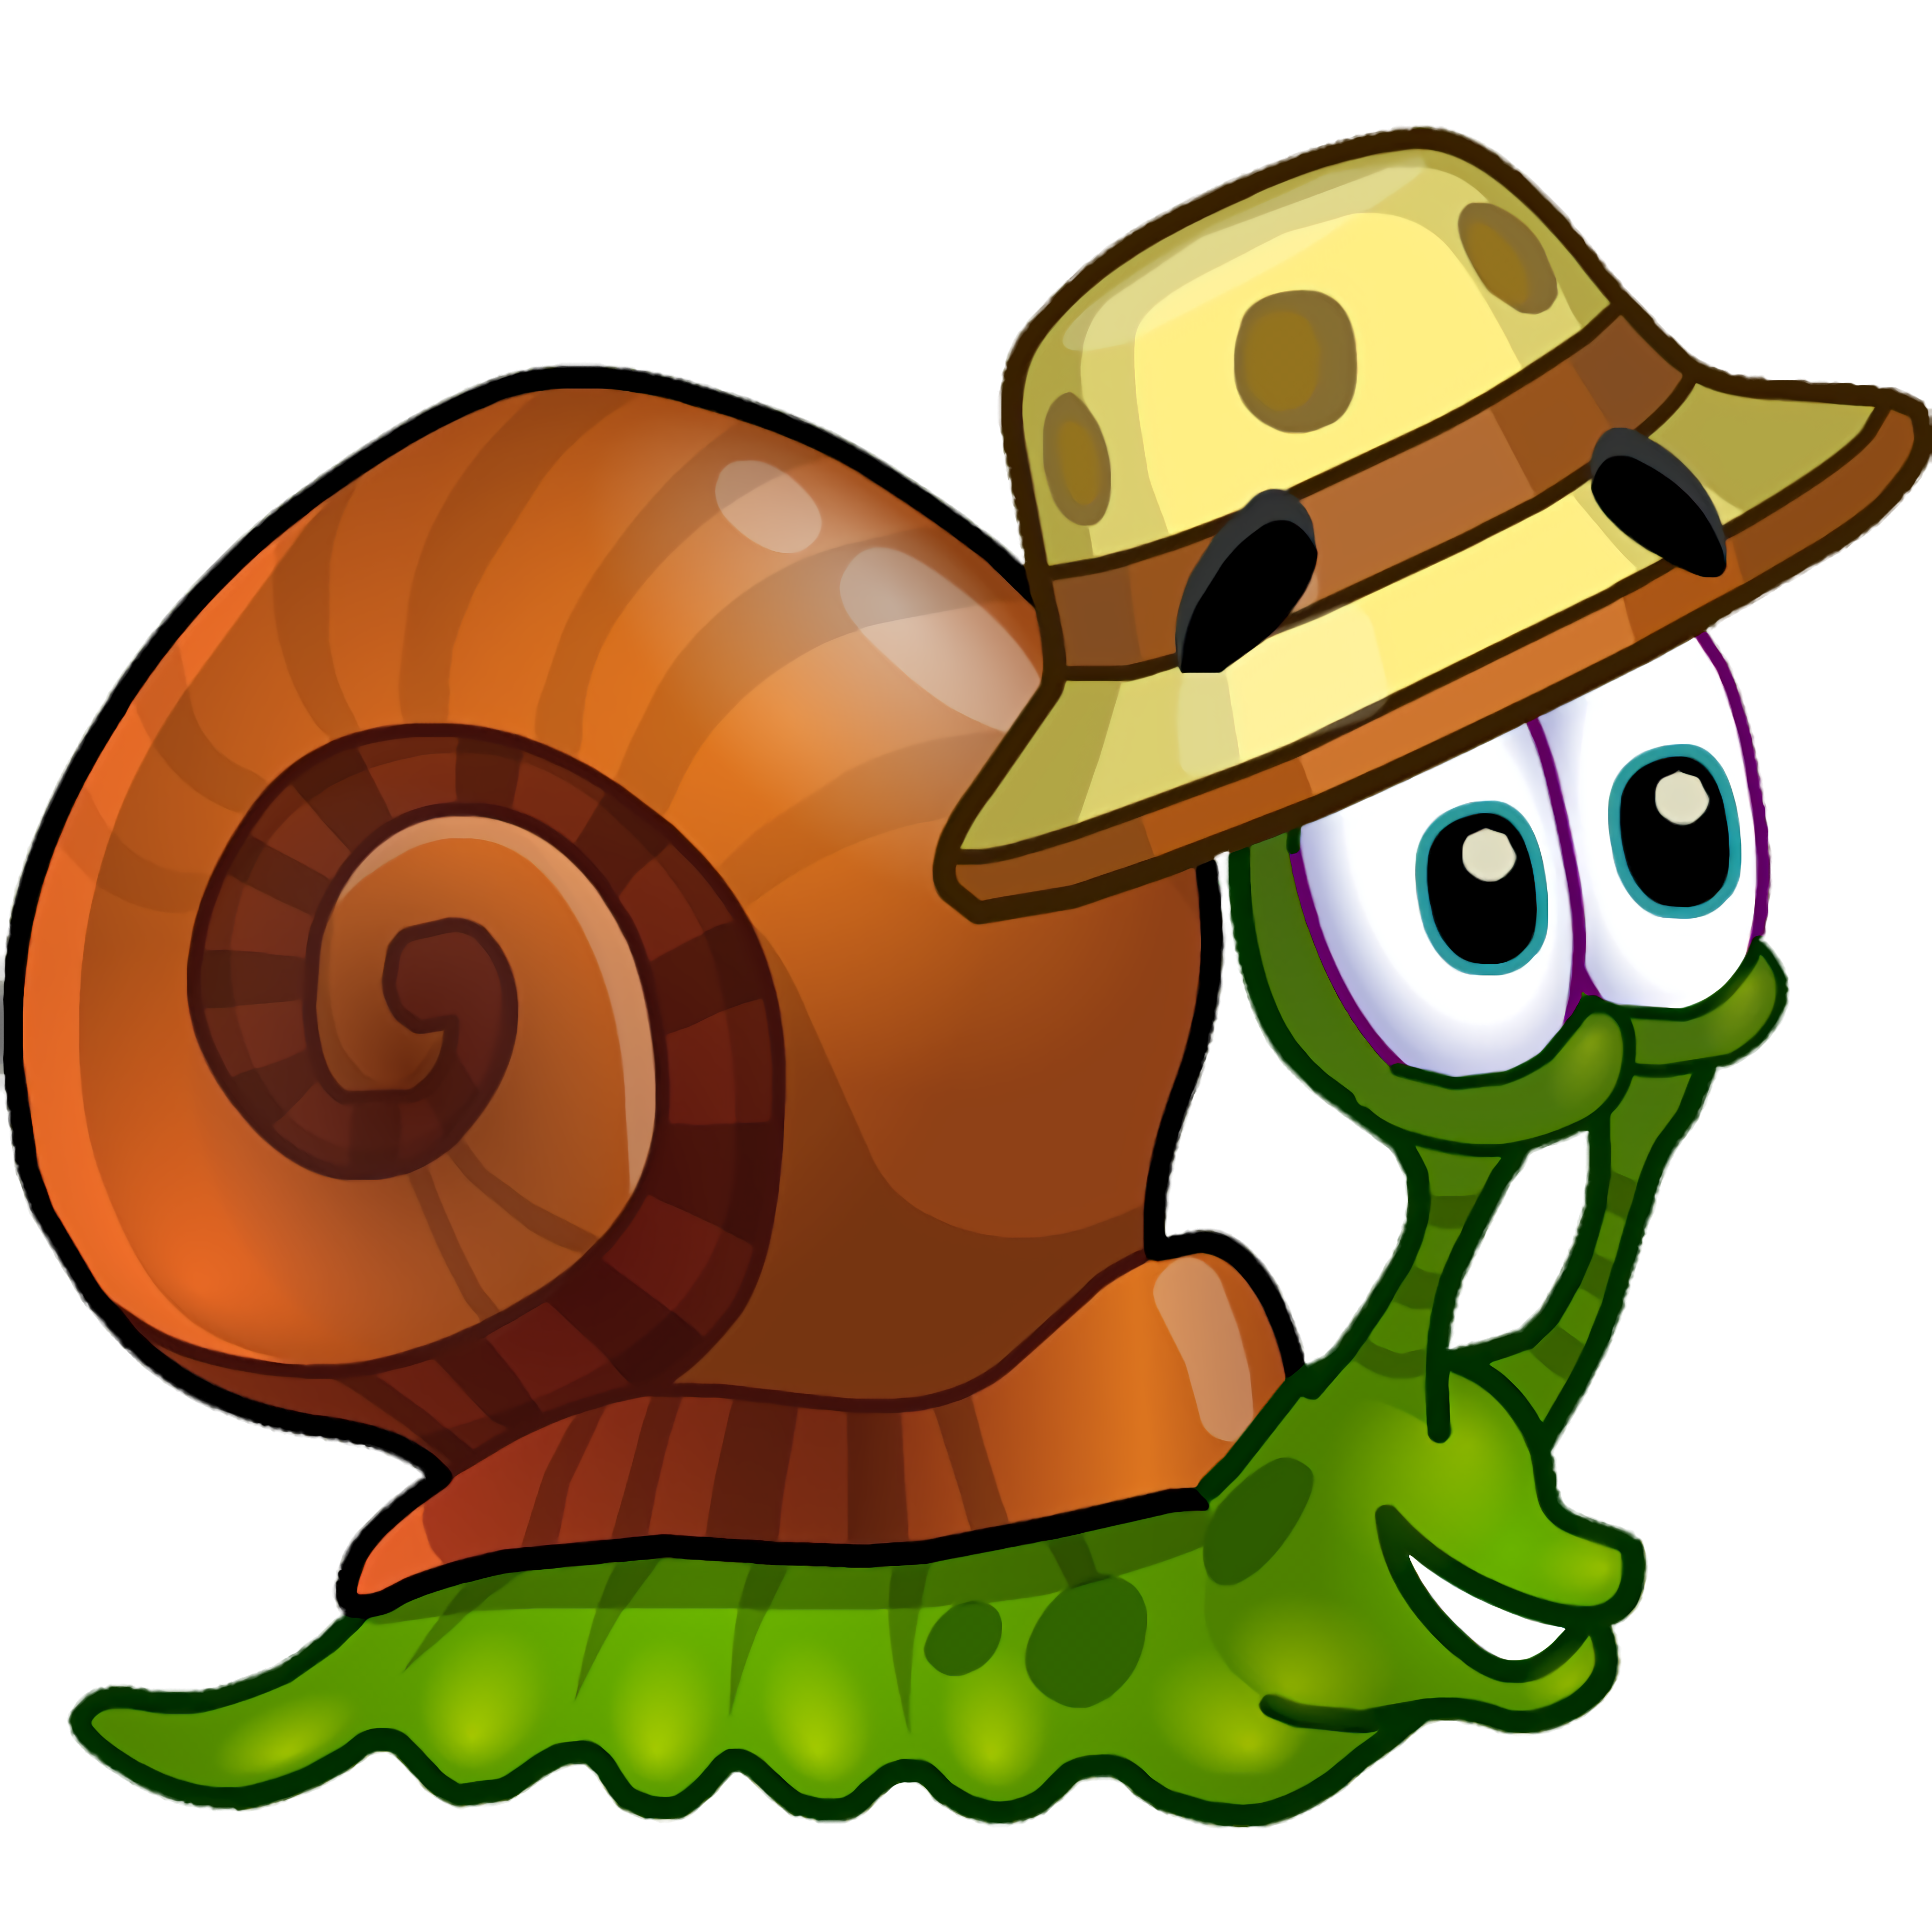 Улитка 1 часть. Улитка Боб 3 (Snail Bob 3). Снаил Боб. Snail Bob 2 (улитка Боб 2). Snail Bob (улитка Боб) 6.